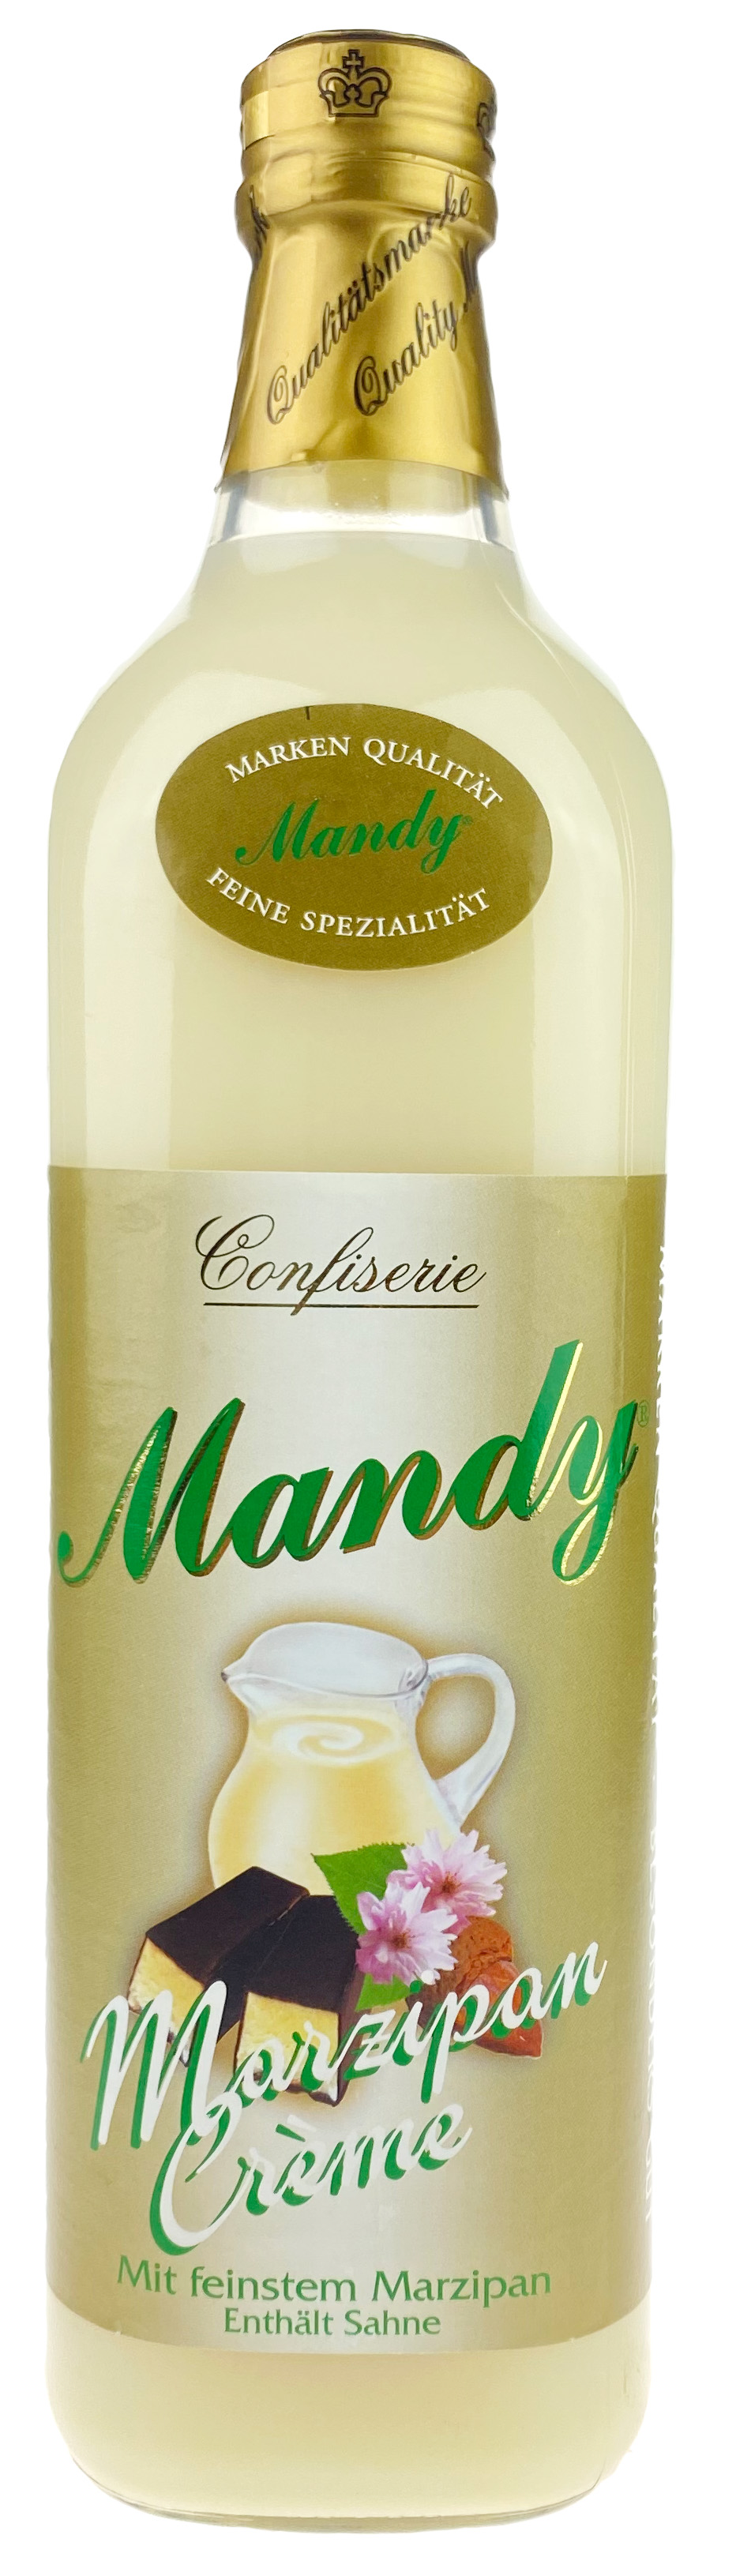 Mandy Marzipan Creme 15%vol 0,7 l